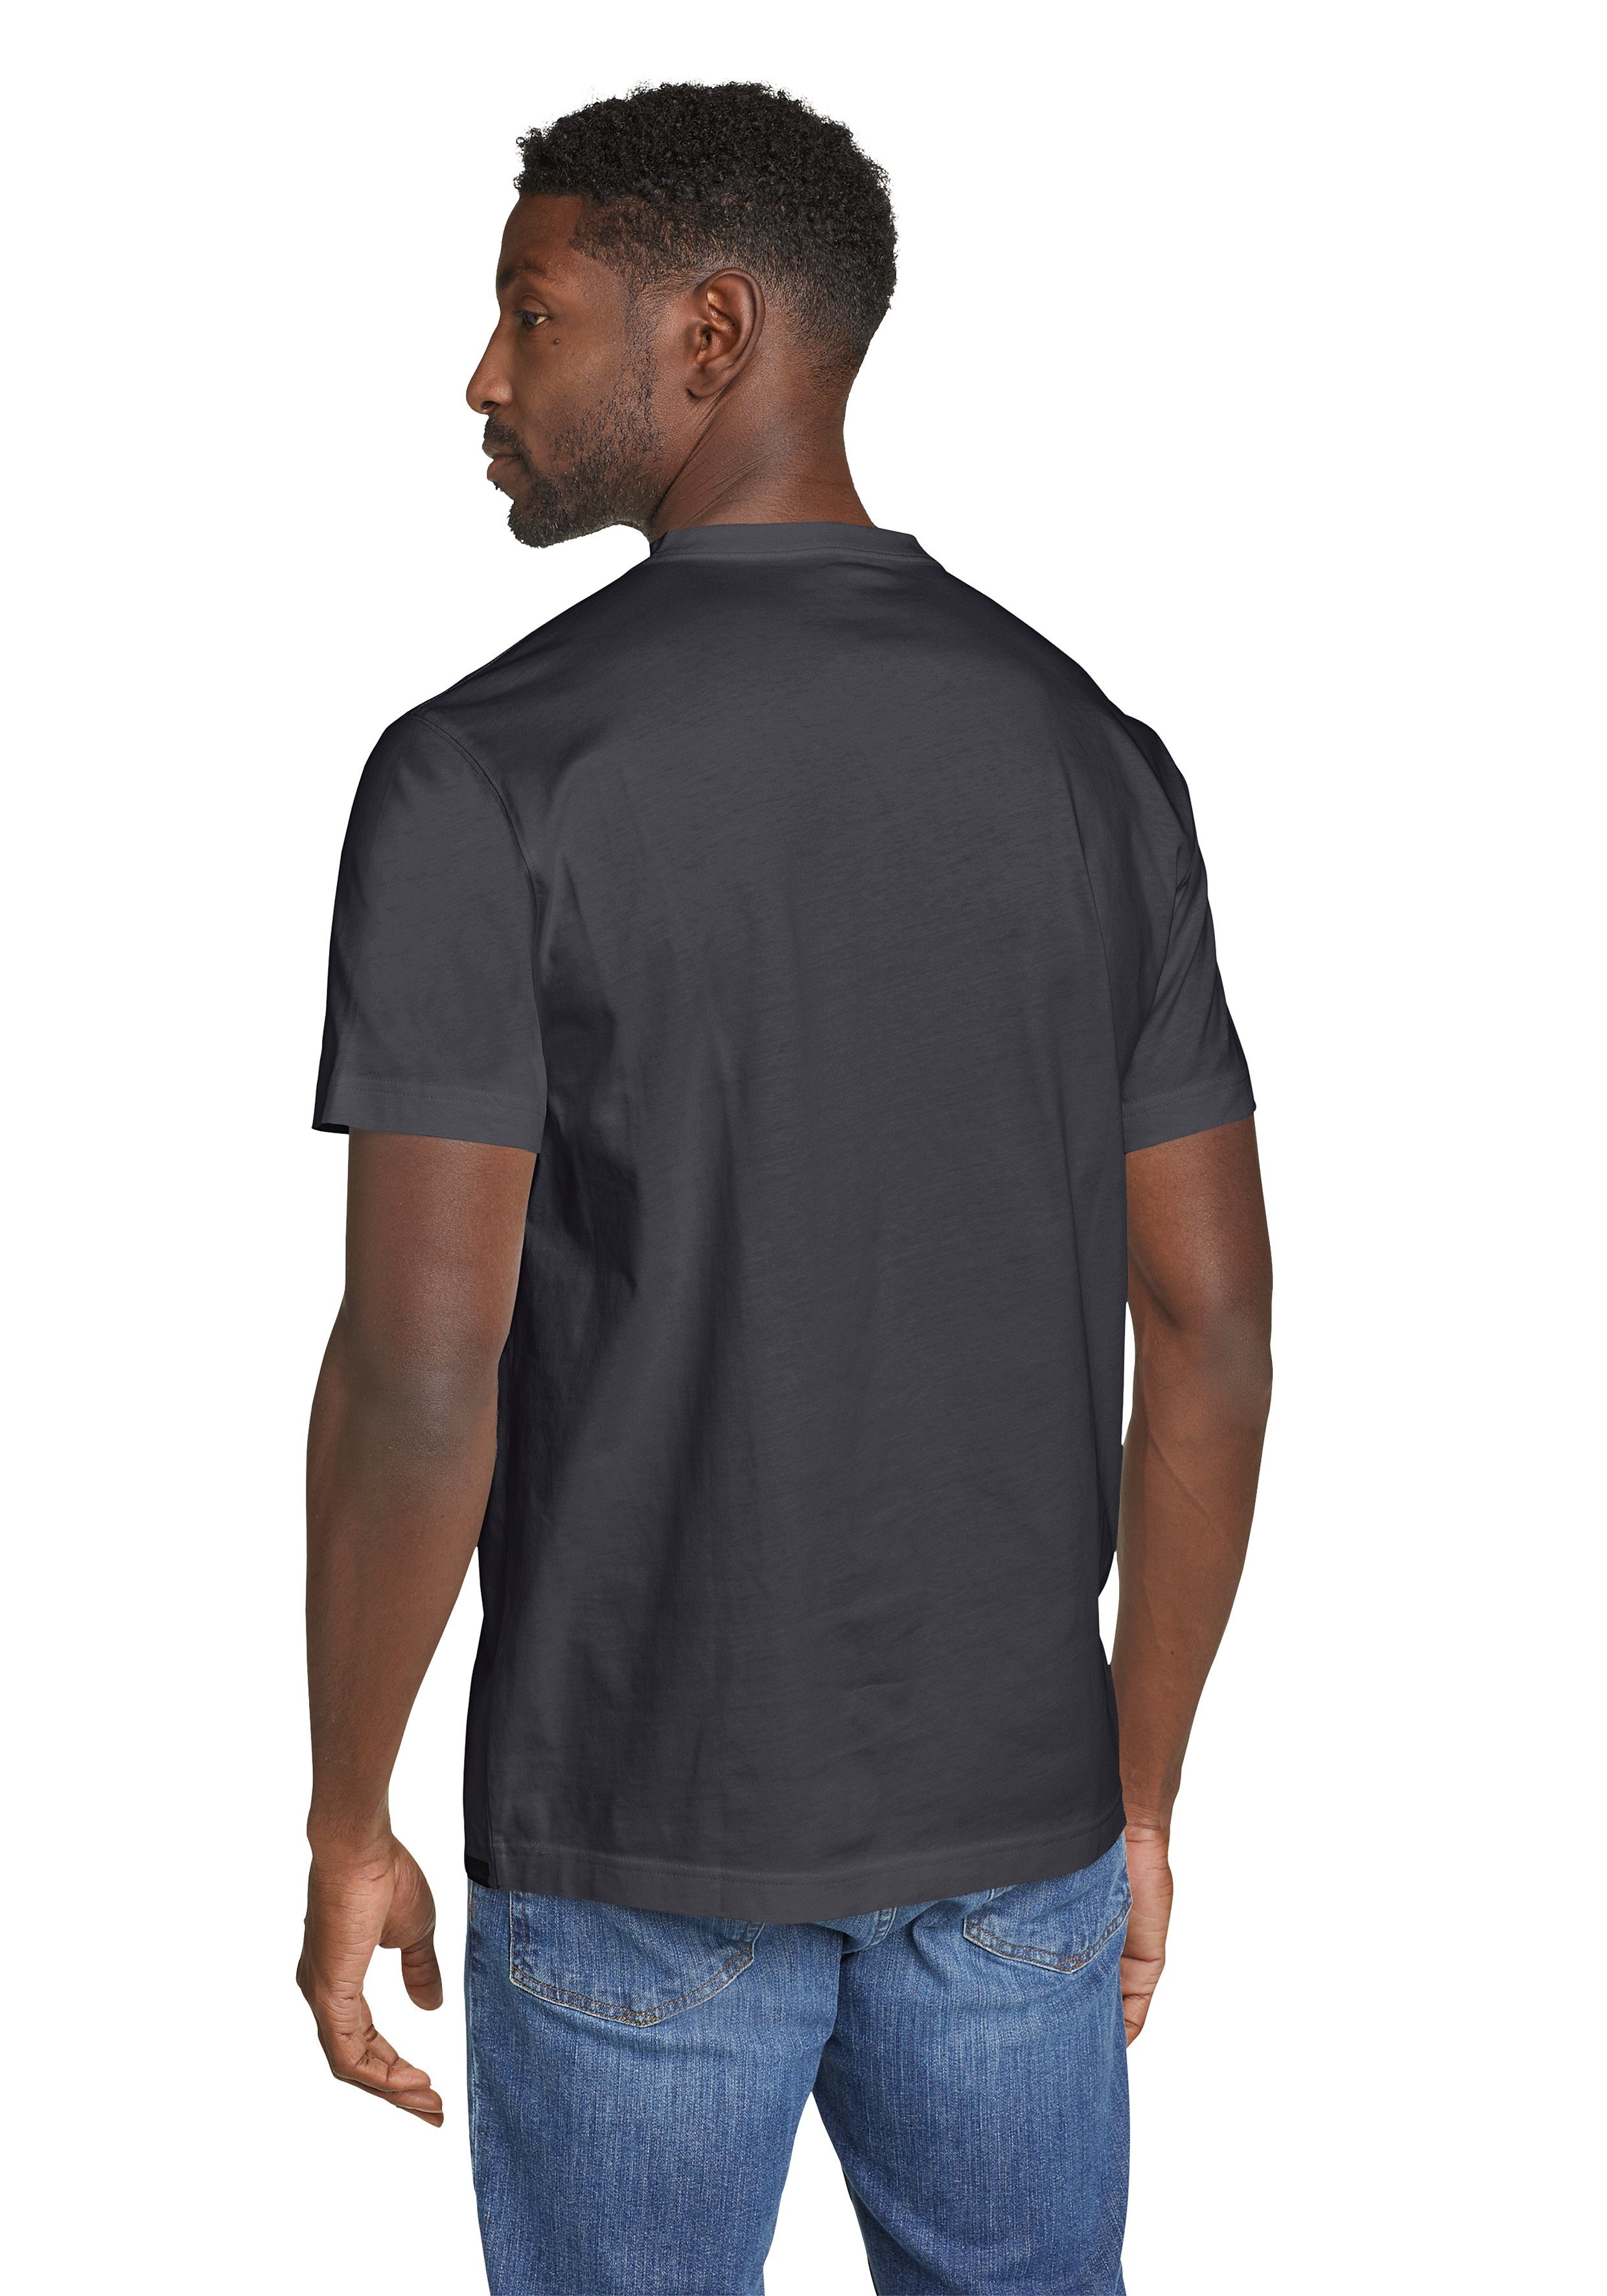 Bauer Legend Eddie Shirt Pro T-Shirt Mitternachtsnavy - V-Ausschnitt Baumwolle 100% Wash